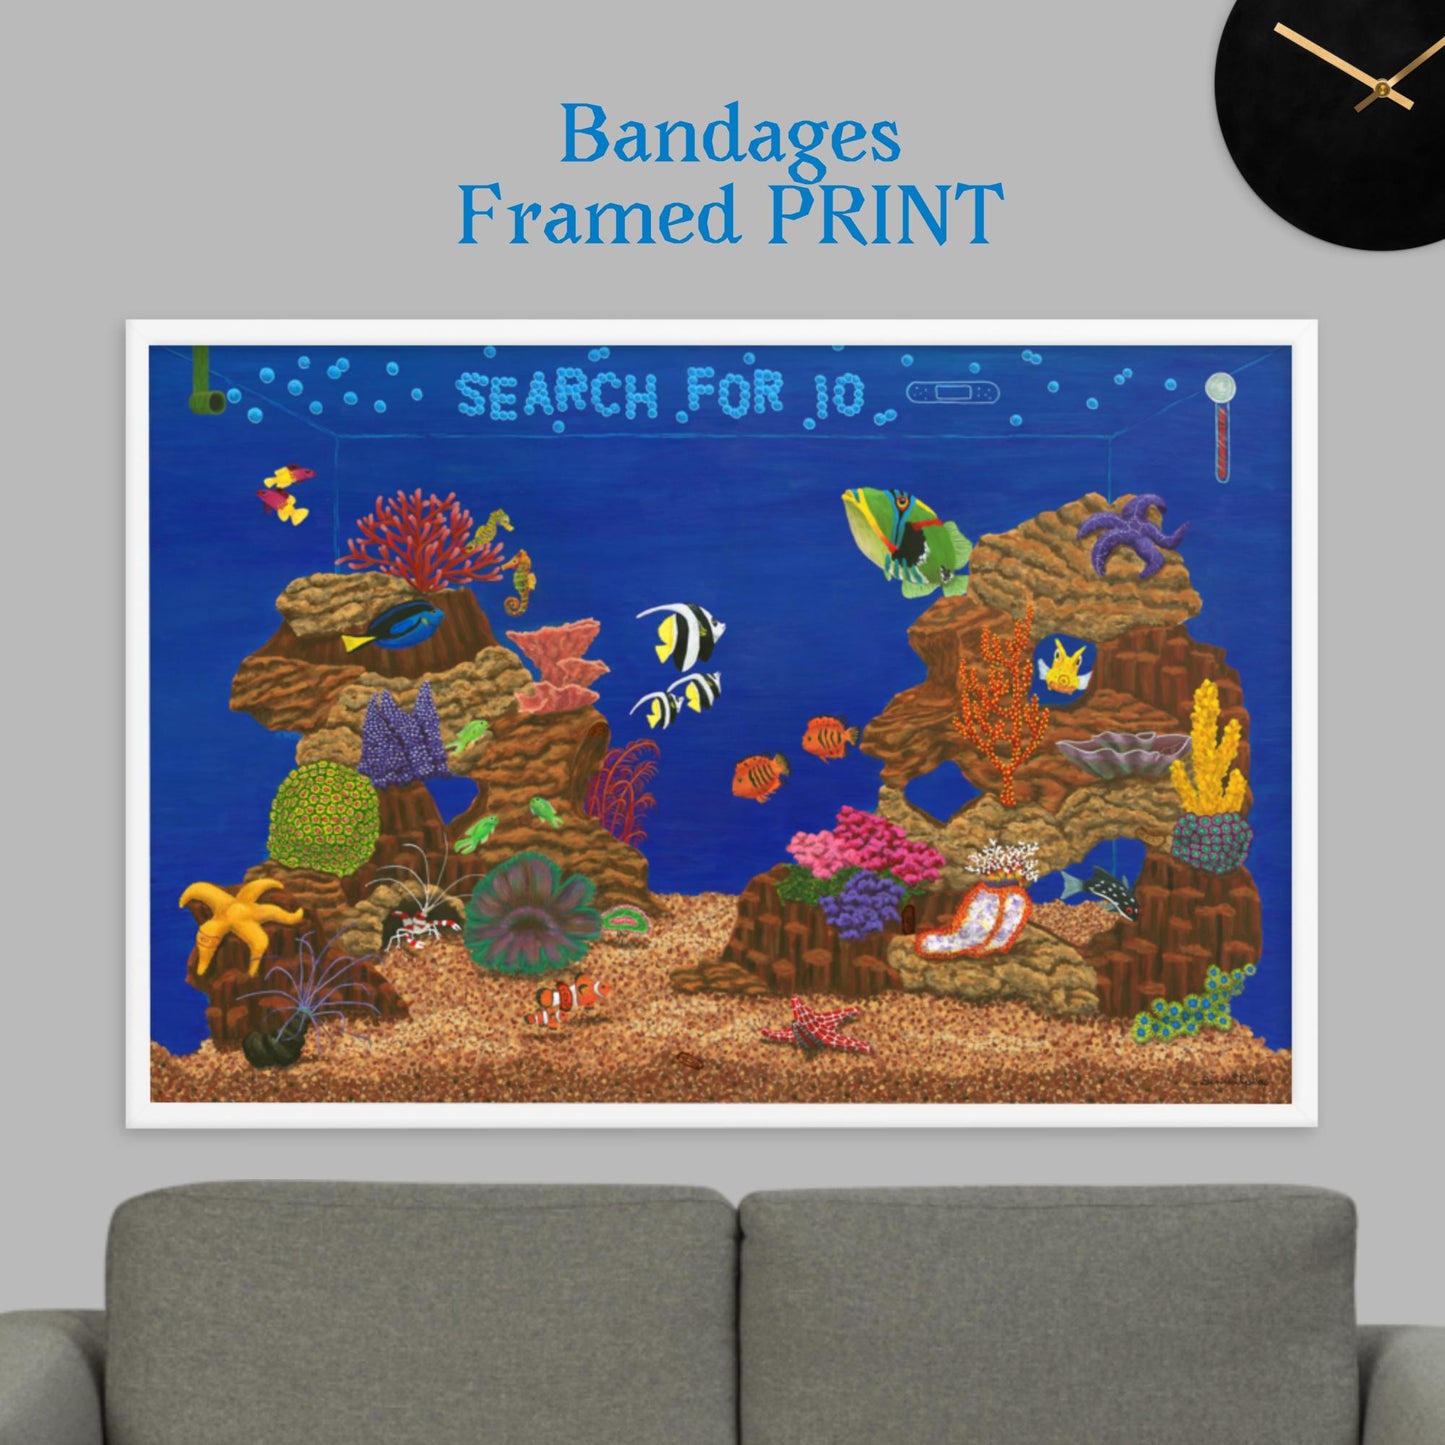 Fish Tank Favorites BANDAGES 24"x36" Framed PRINT Artwork